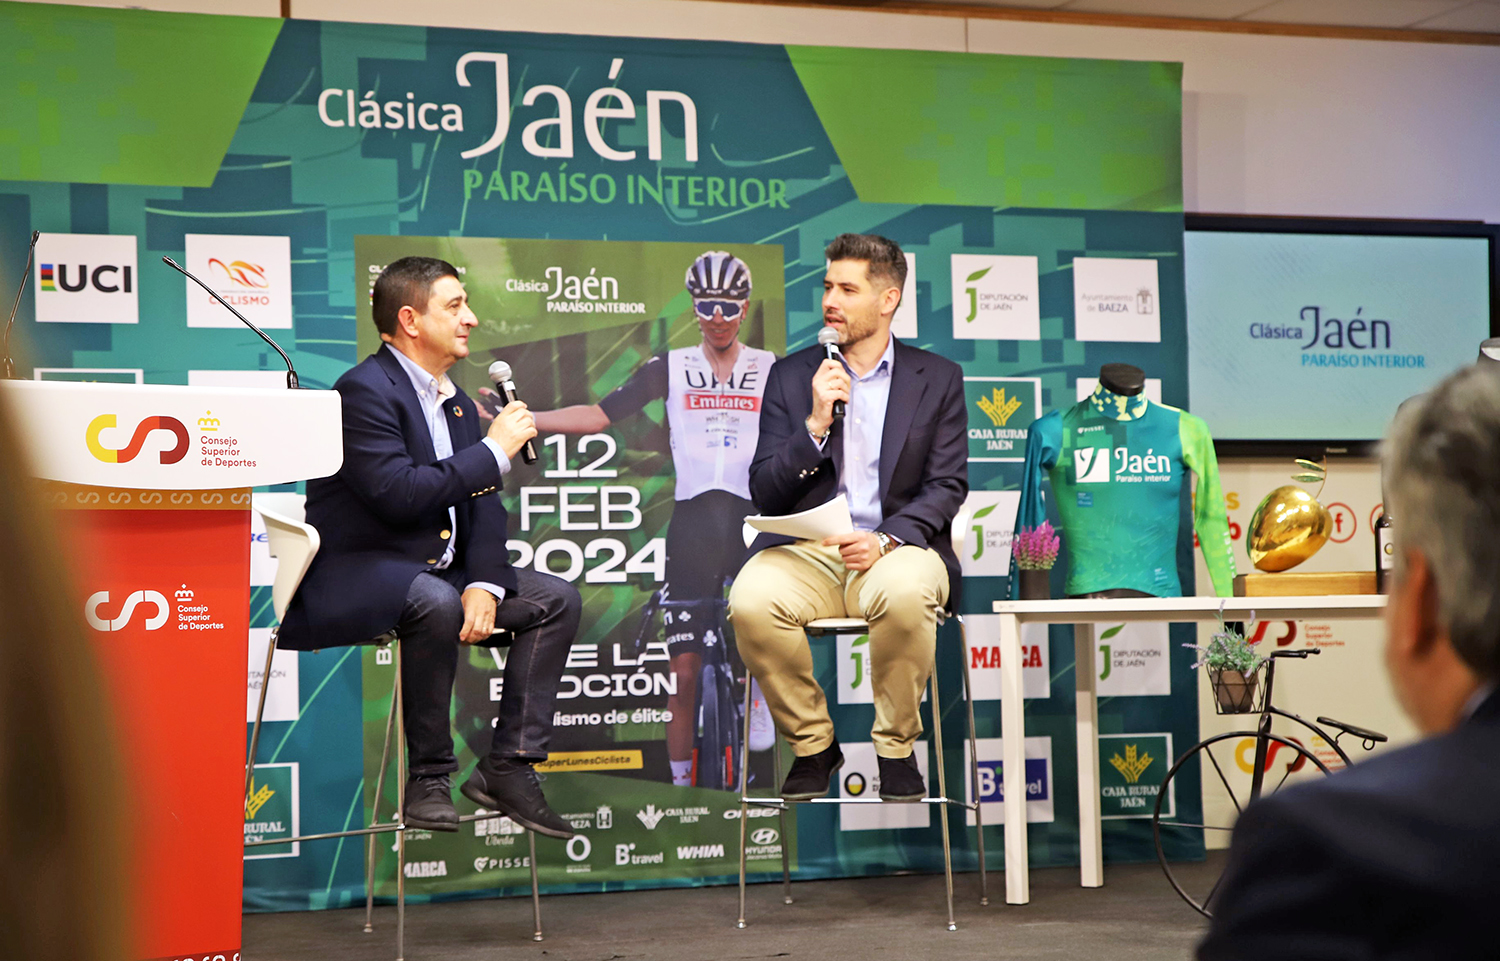 Francisco Reyes destaca la repercusión y el prestigio alcanzado por la Clásica ciclista Jaén Paraíso Interior en solo dos ediciones